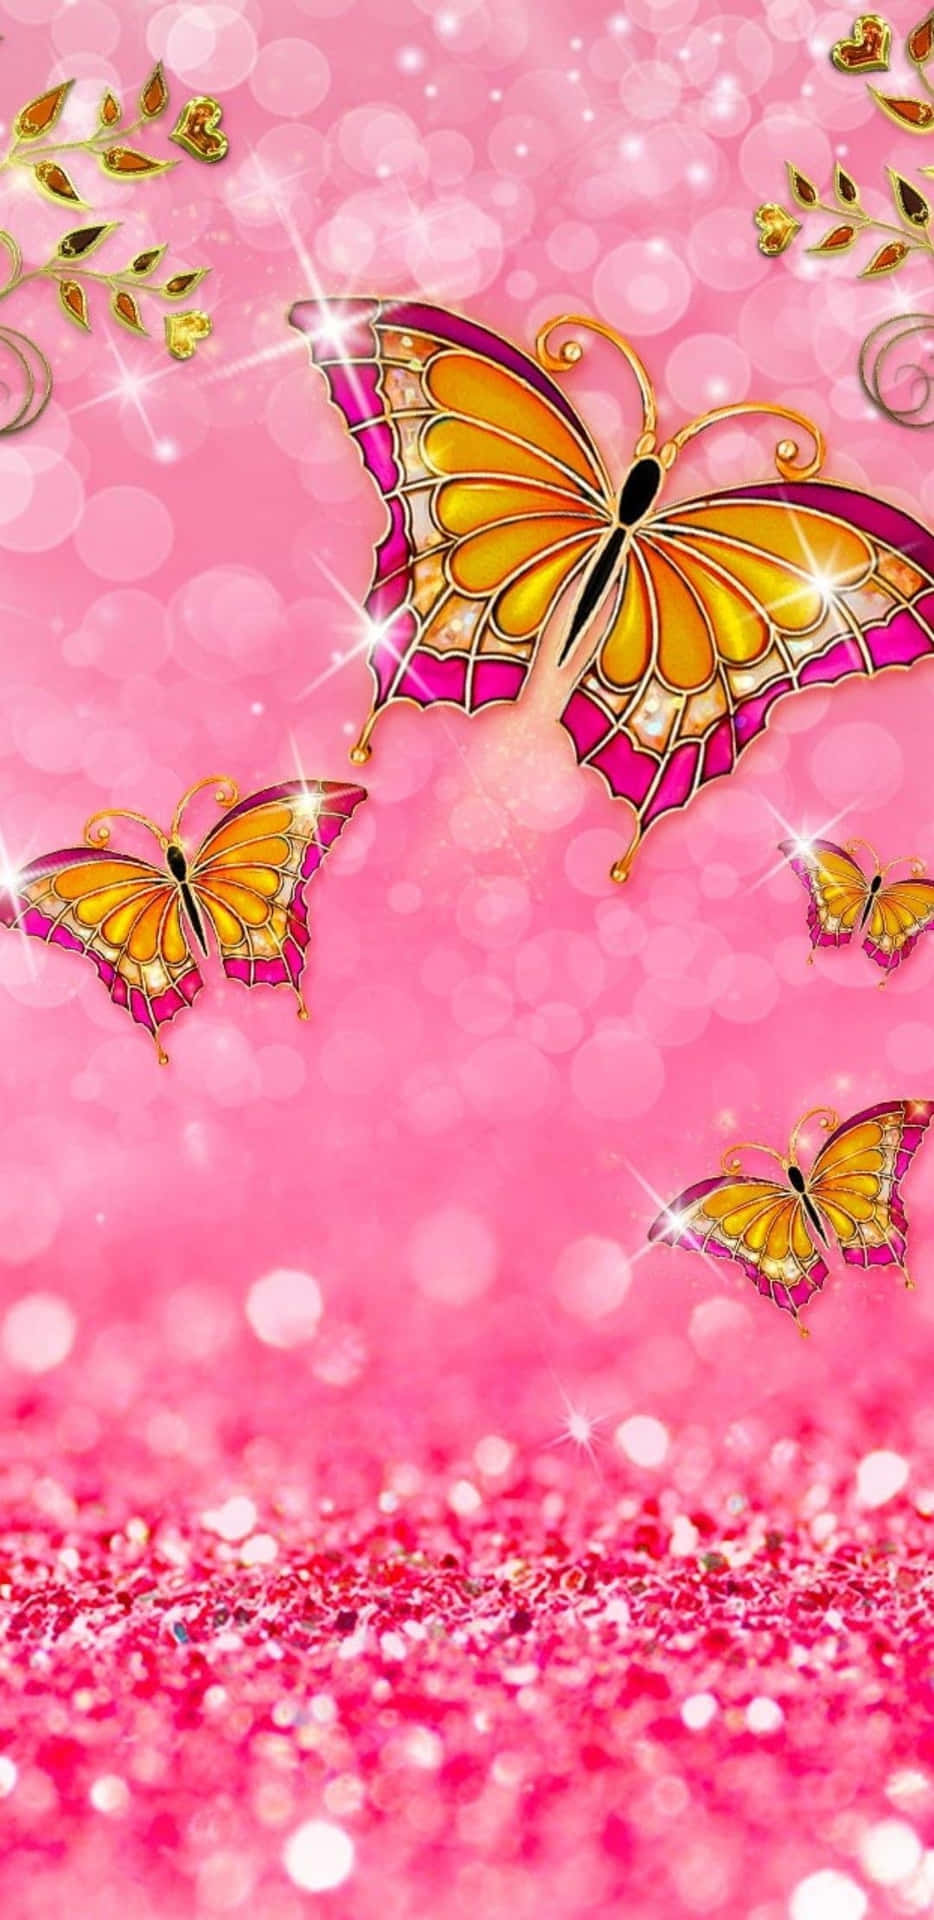 Bildein Sehnsüchtiger Schmetterling Zart Umhüllt Von Schimmerndem Rosa Glitzer. Wallpaper